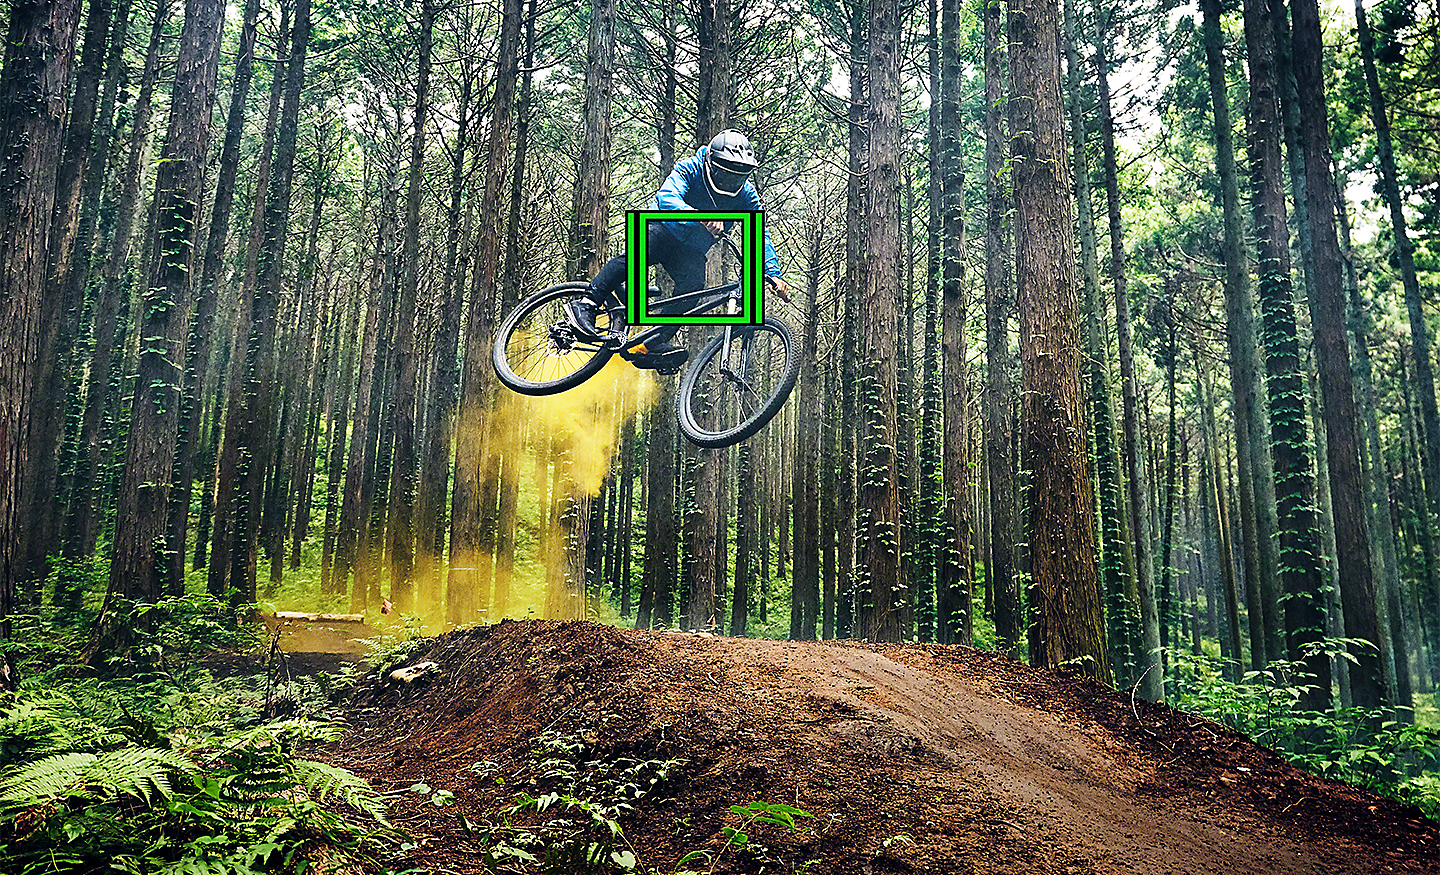 Horský cyklista skákajúci v lese so zeleným štvorcom, ktorý znázorňuje sledovanie v reálnom čase